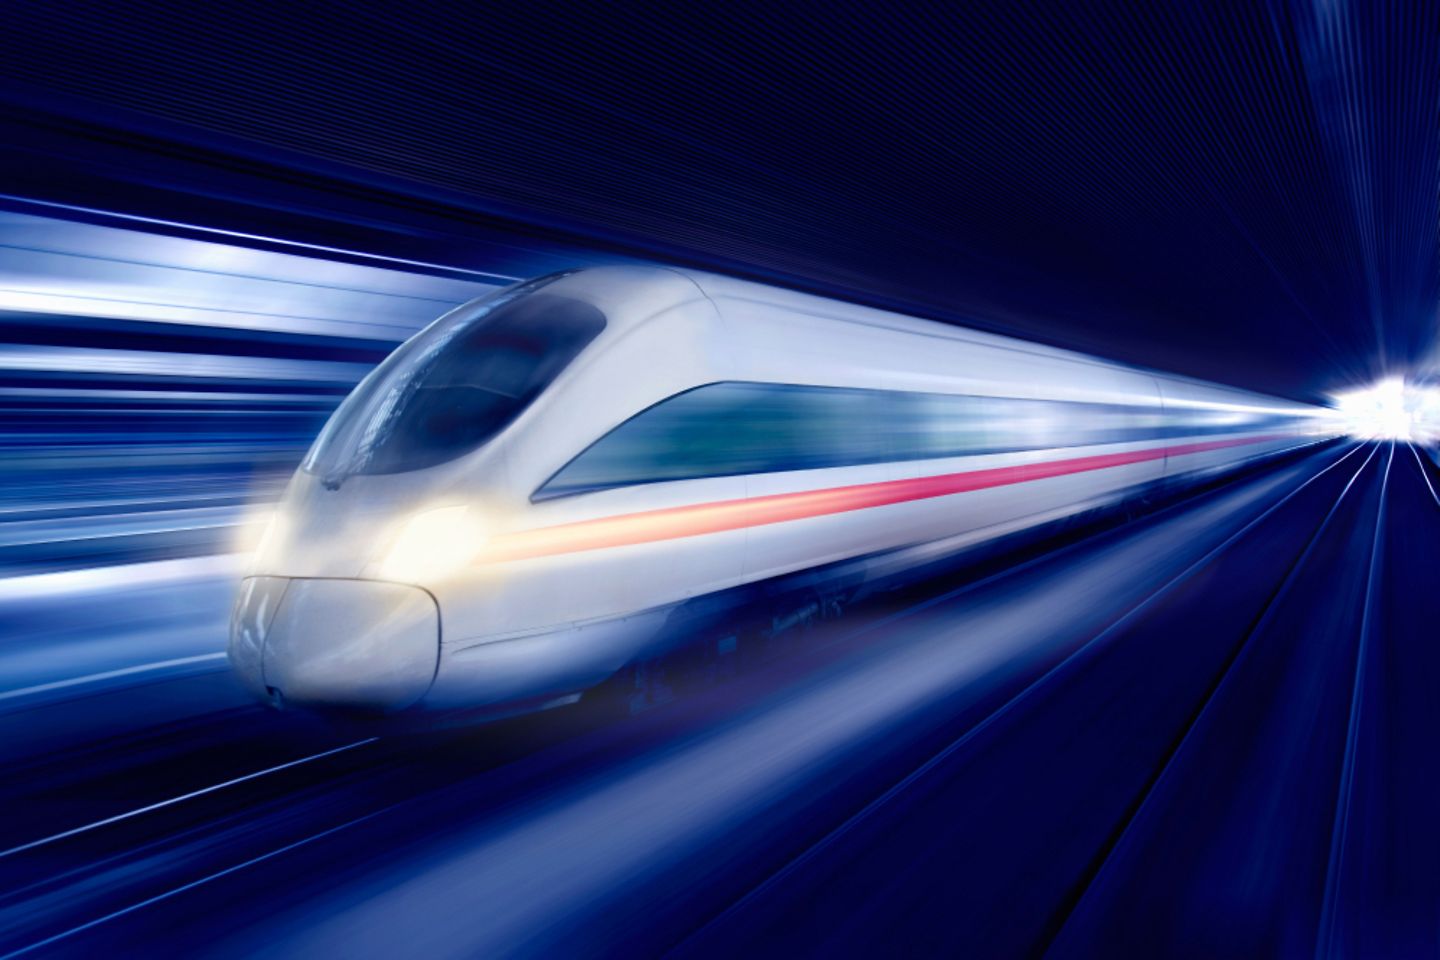 Very fast train in a futuristic design